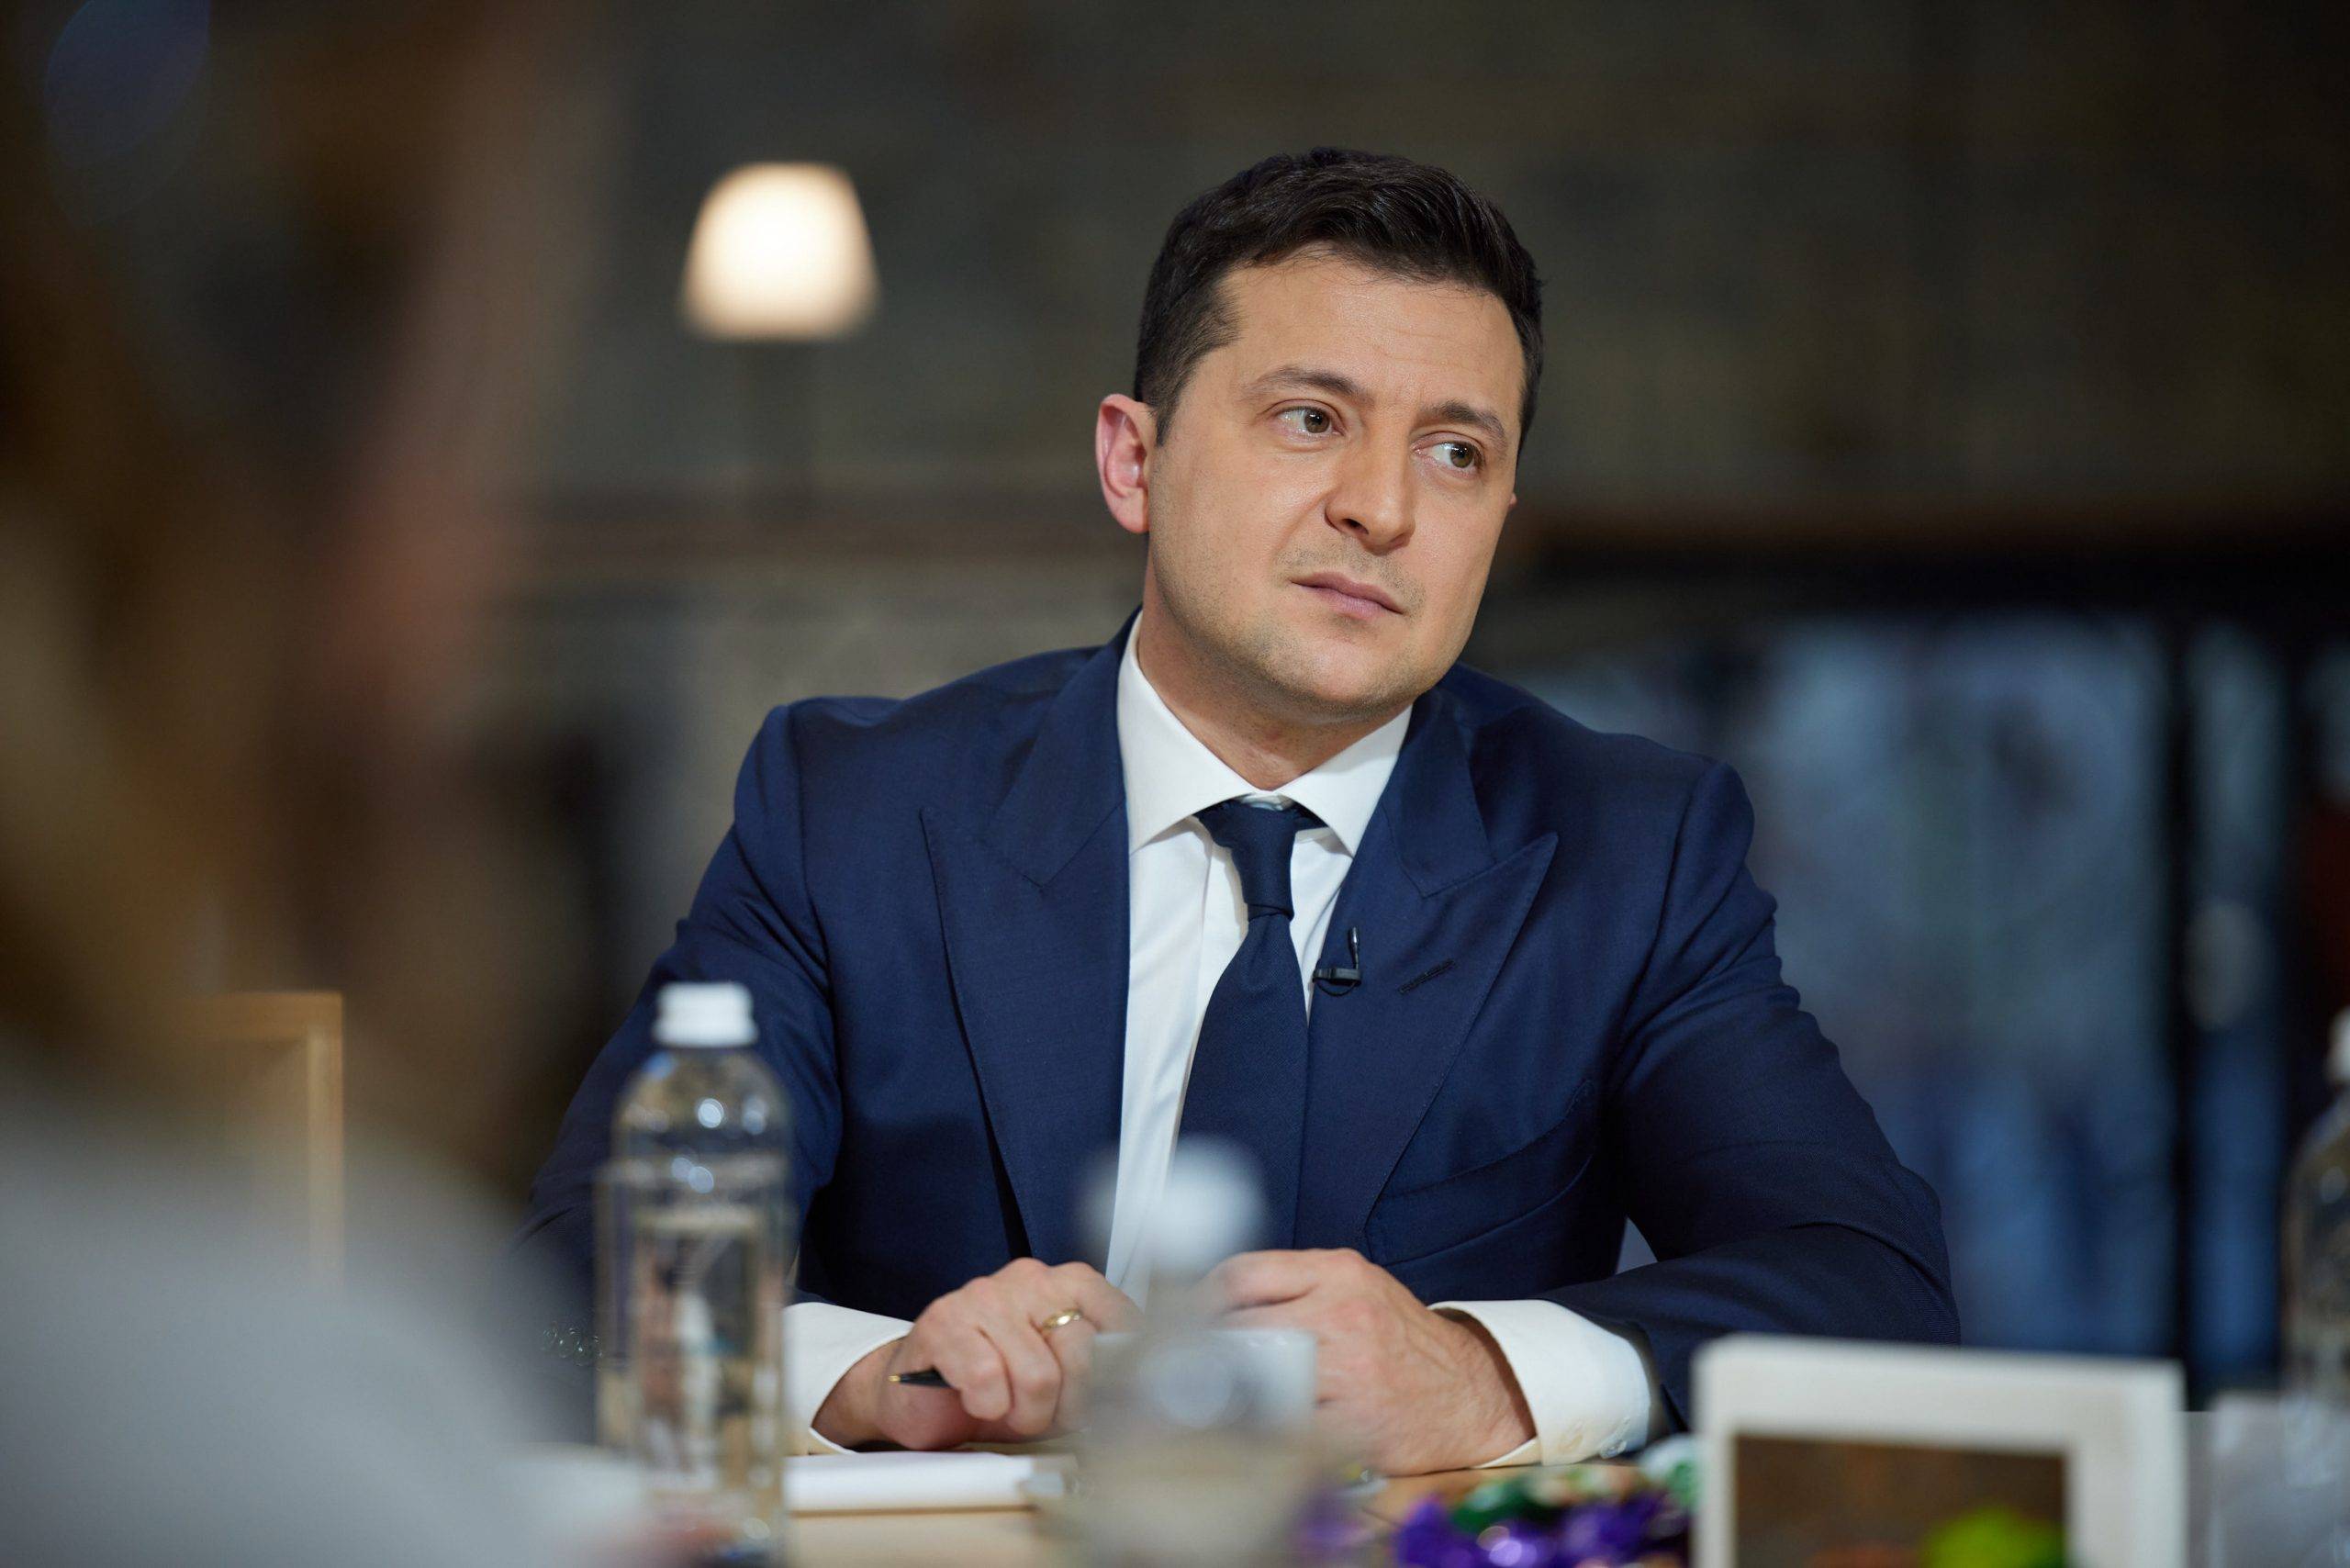 «Политика нищих»: политолог объяснил, что заявлением о госперевороте Зеленский пытается повысить рейтинг